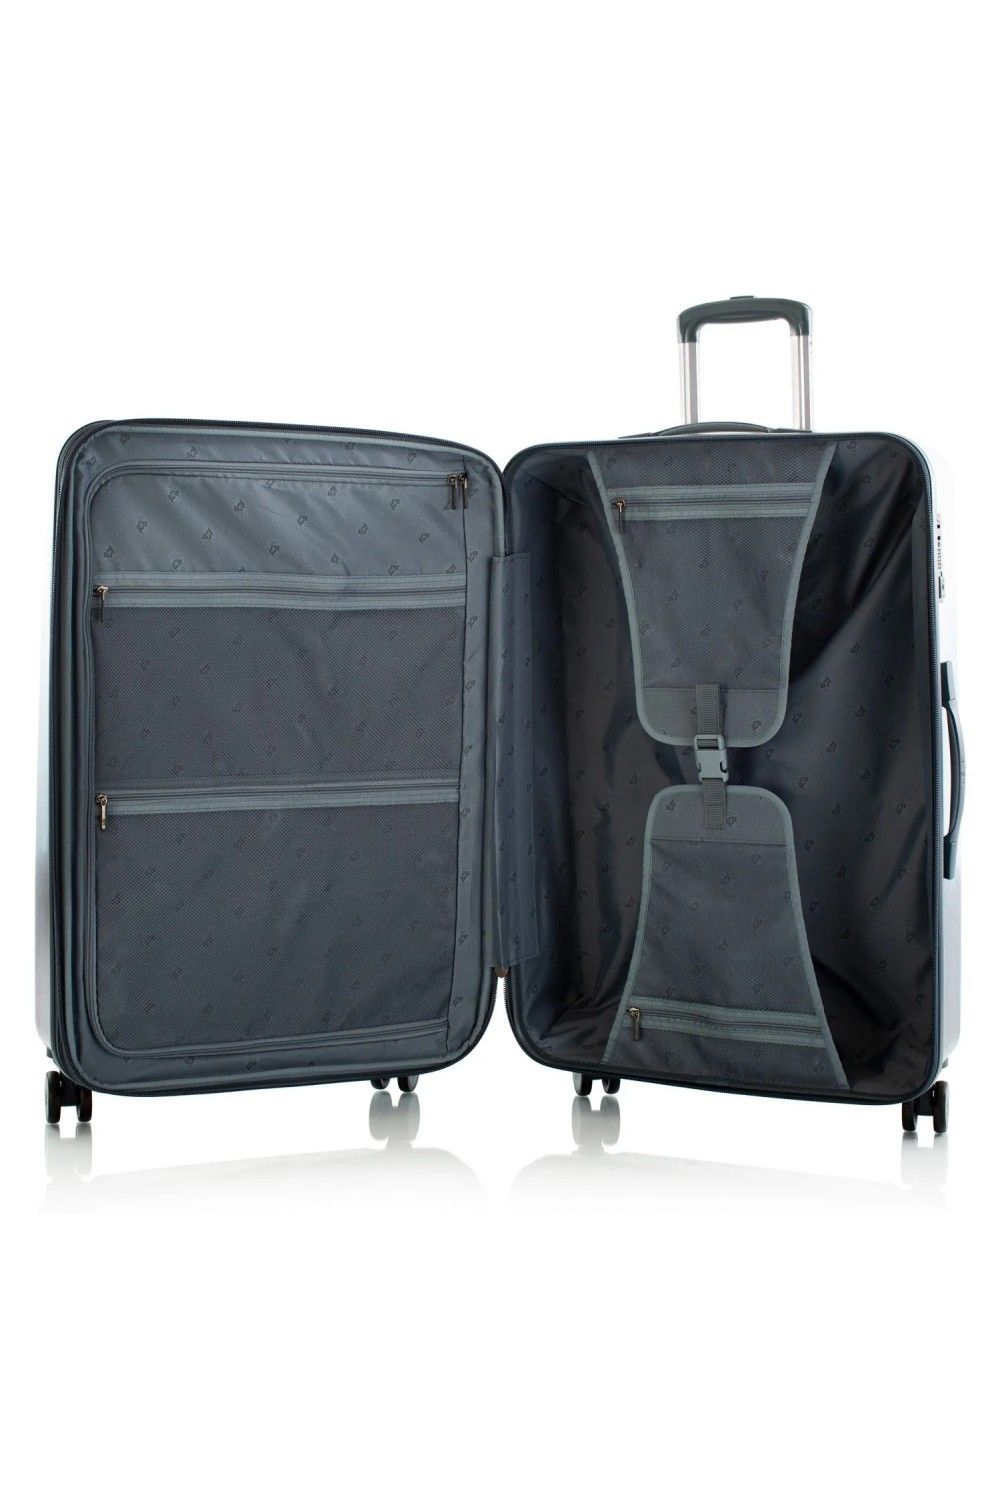 Suitcase Heys BLUE Fashion 4 Rad Large 76cm expandable